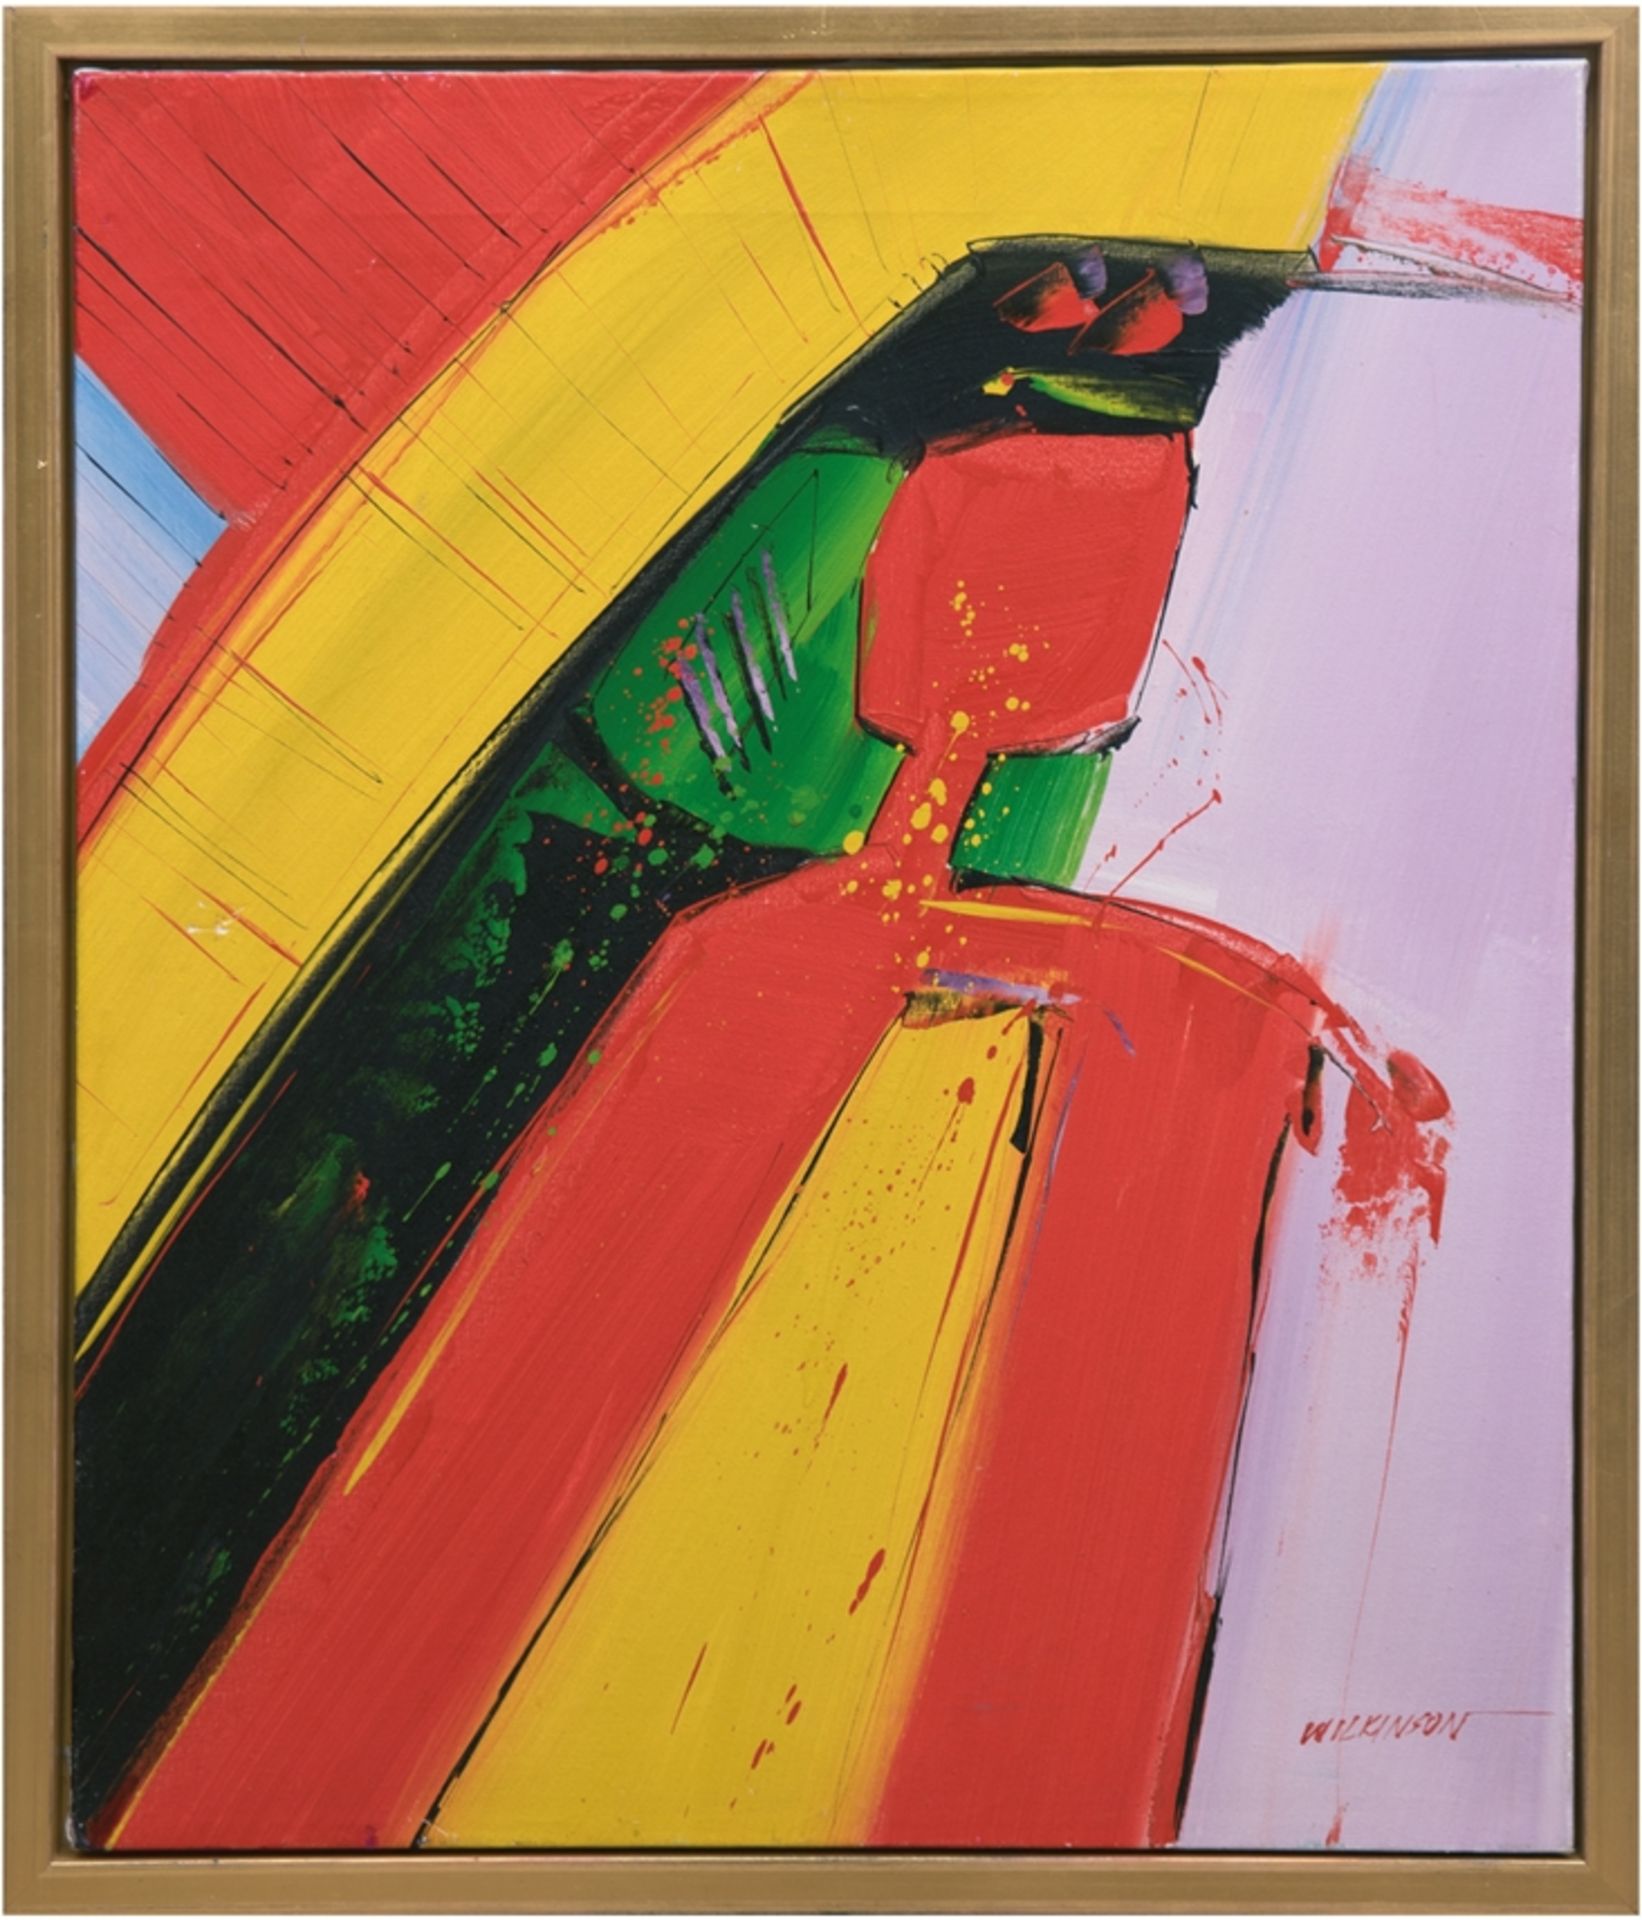 Wilkinson (Maler der Moderne) "Abstrakte Farbkomposition", Öl/Lw., signiert u.r, 62x51 cm, Rahmen